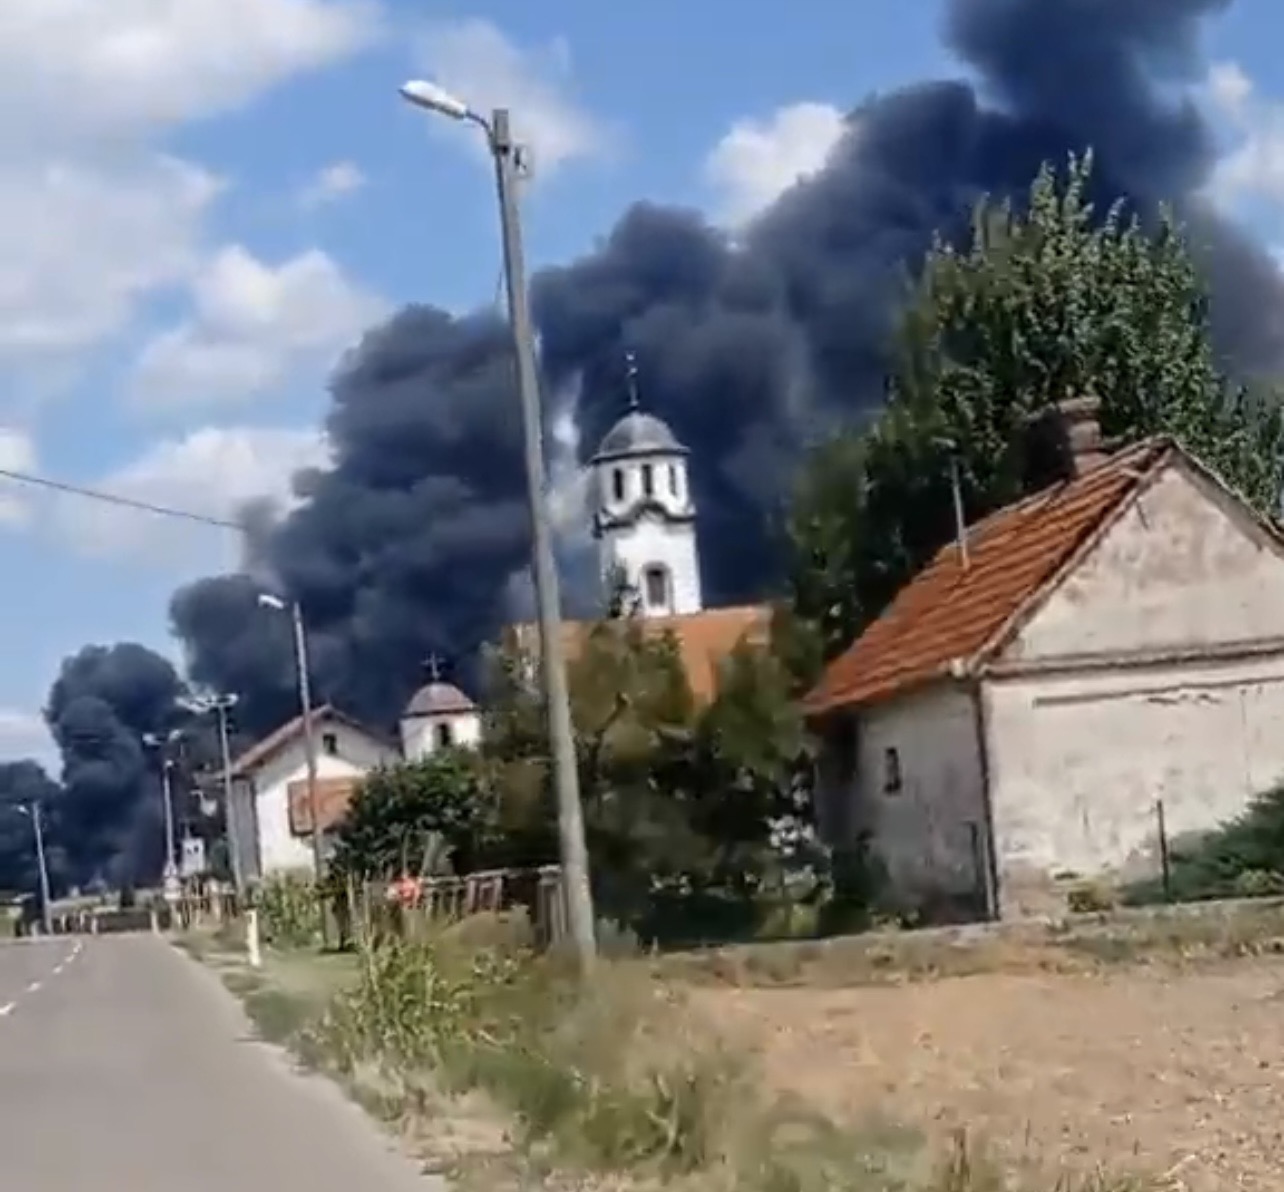 Požar u selu Brodac i dalje bukti, vatrogascima stiže ispomoć (FOTO) 